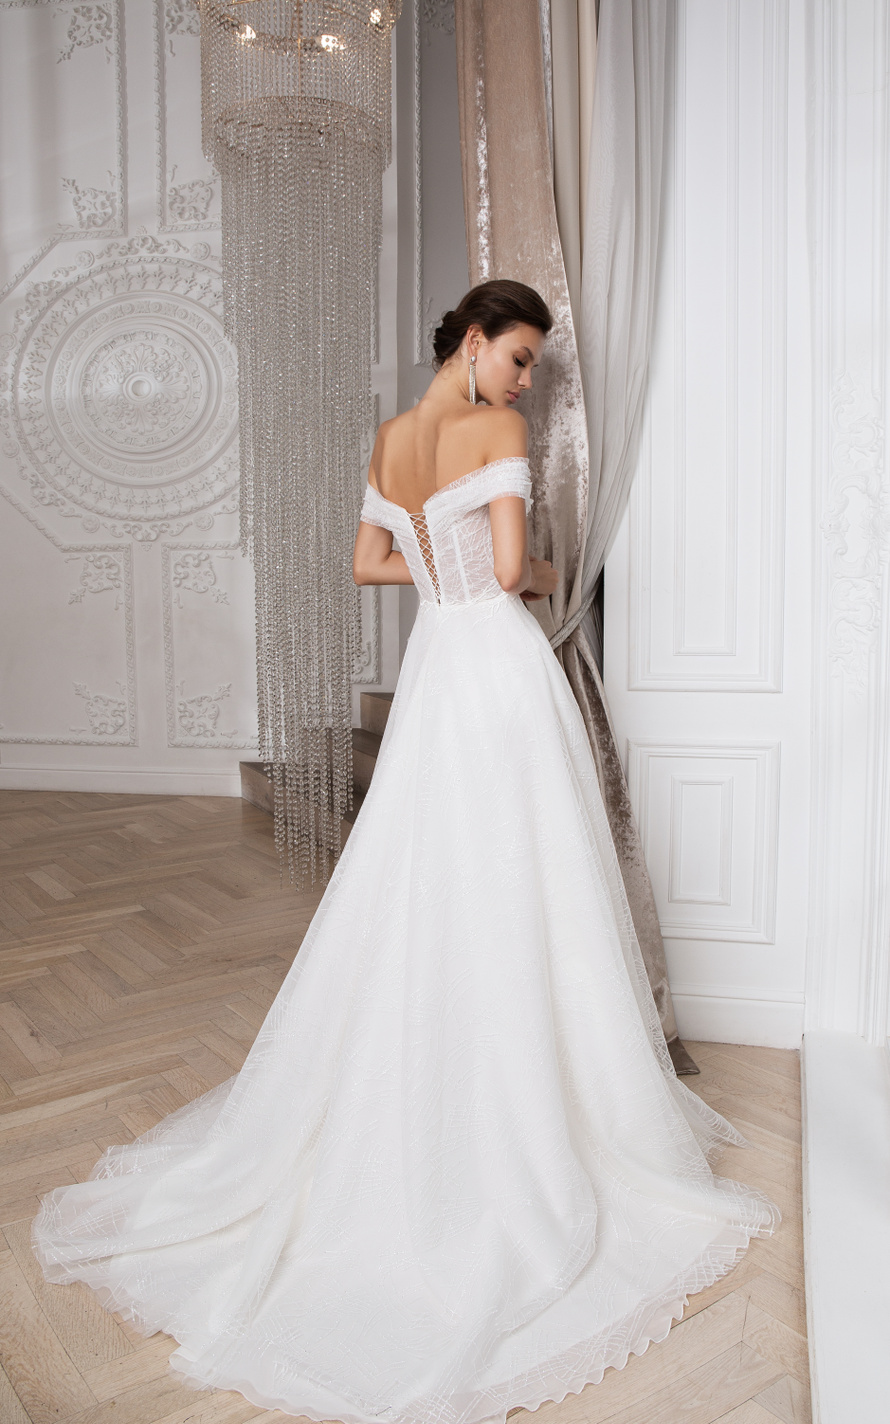 Купить свадебное платье «Ричи» Мэрри Марк из коллекции 2020 года в Краснодаре